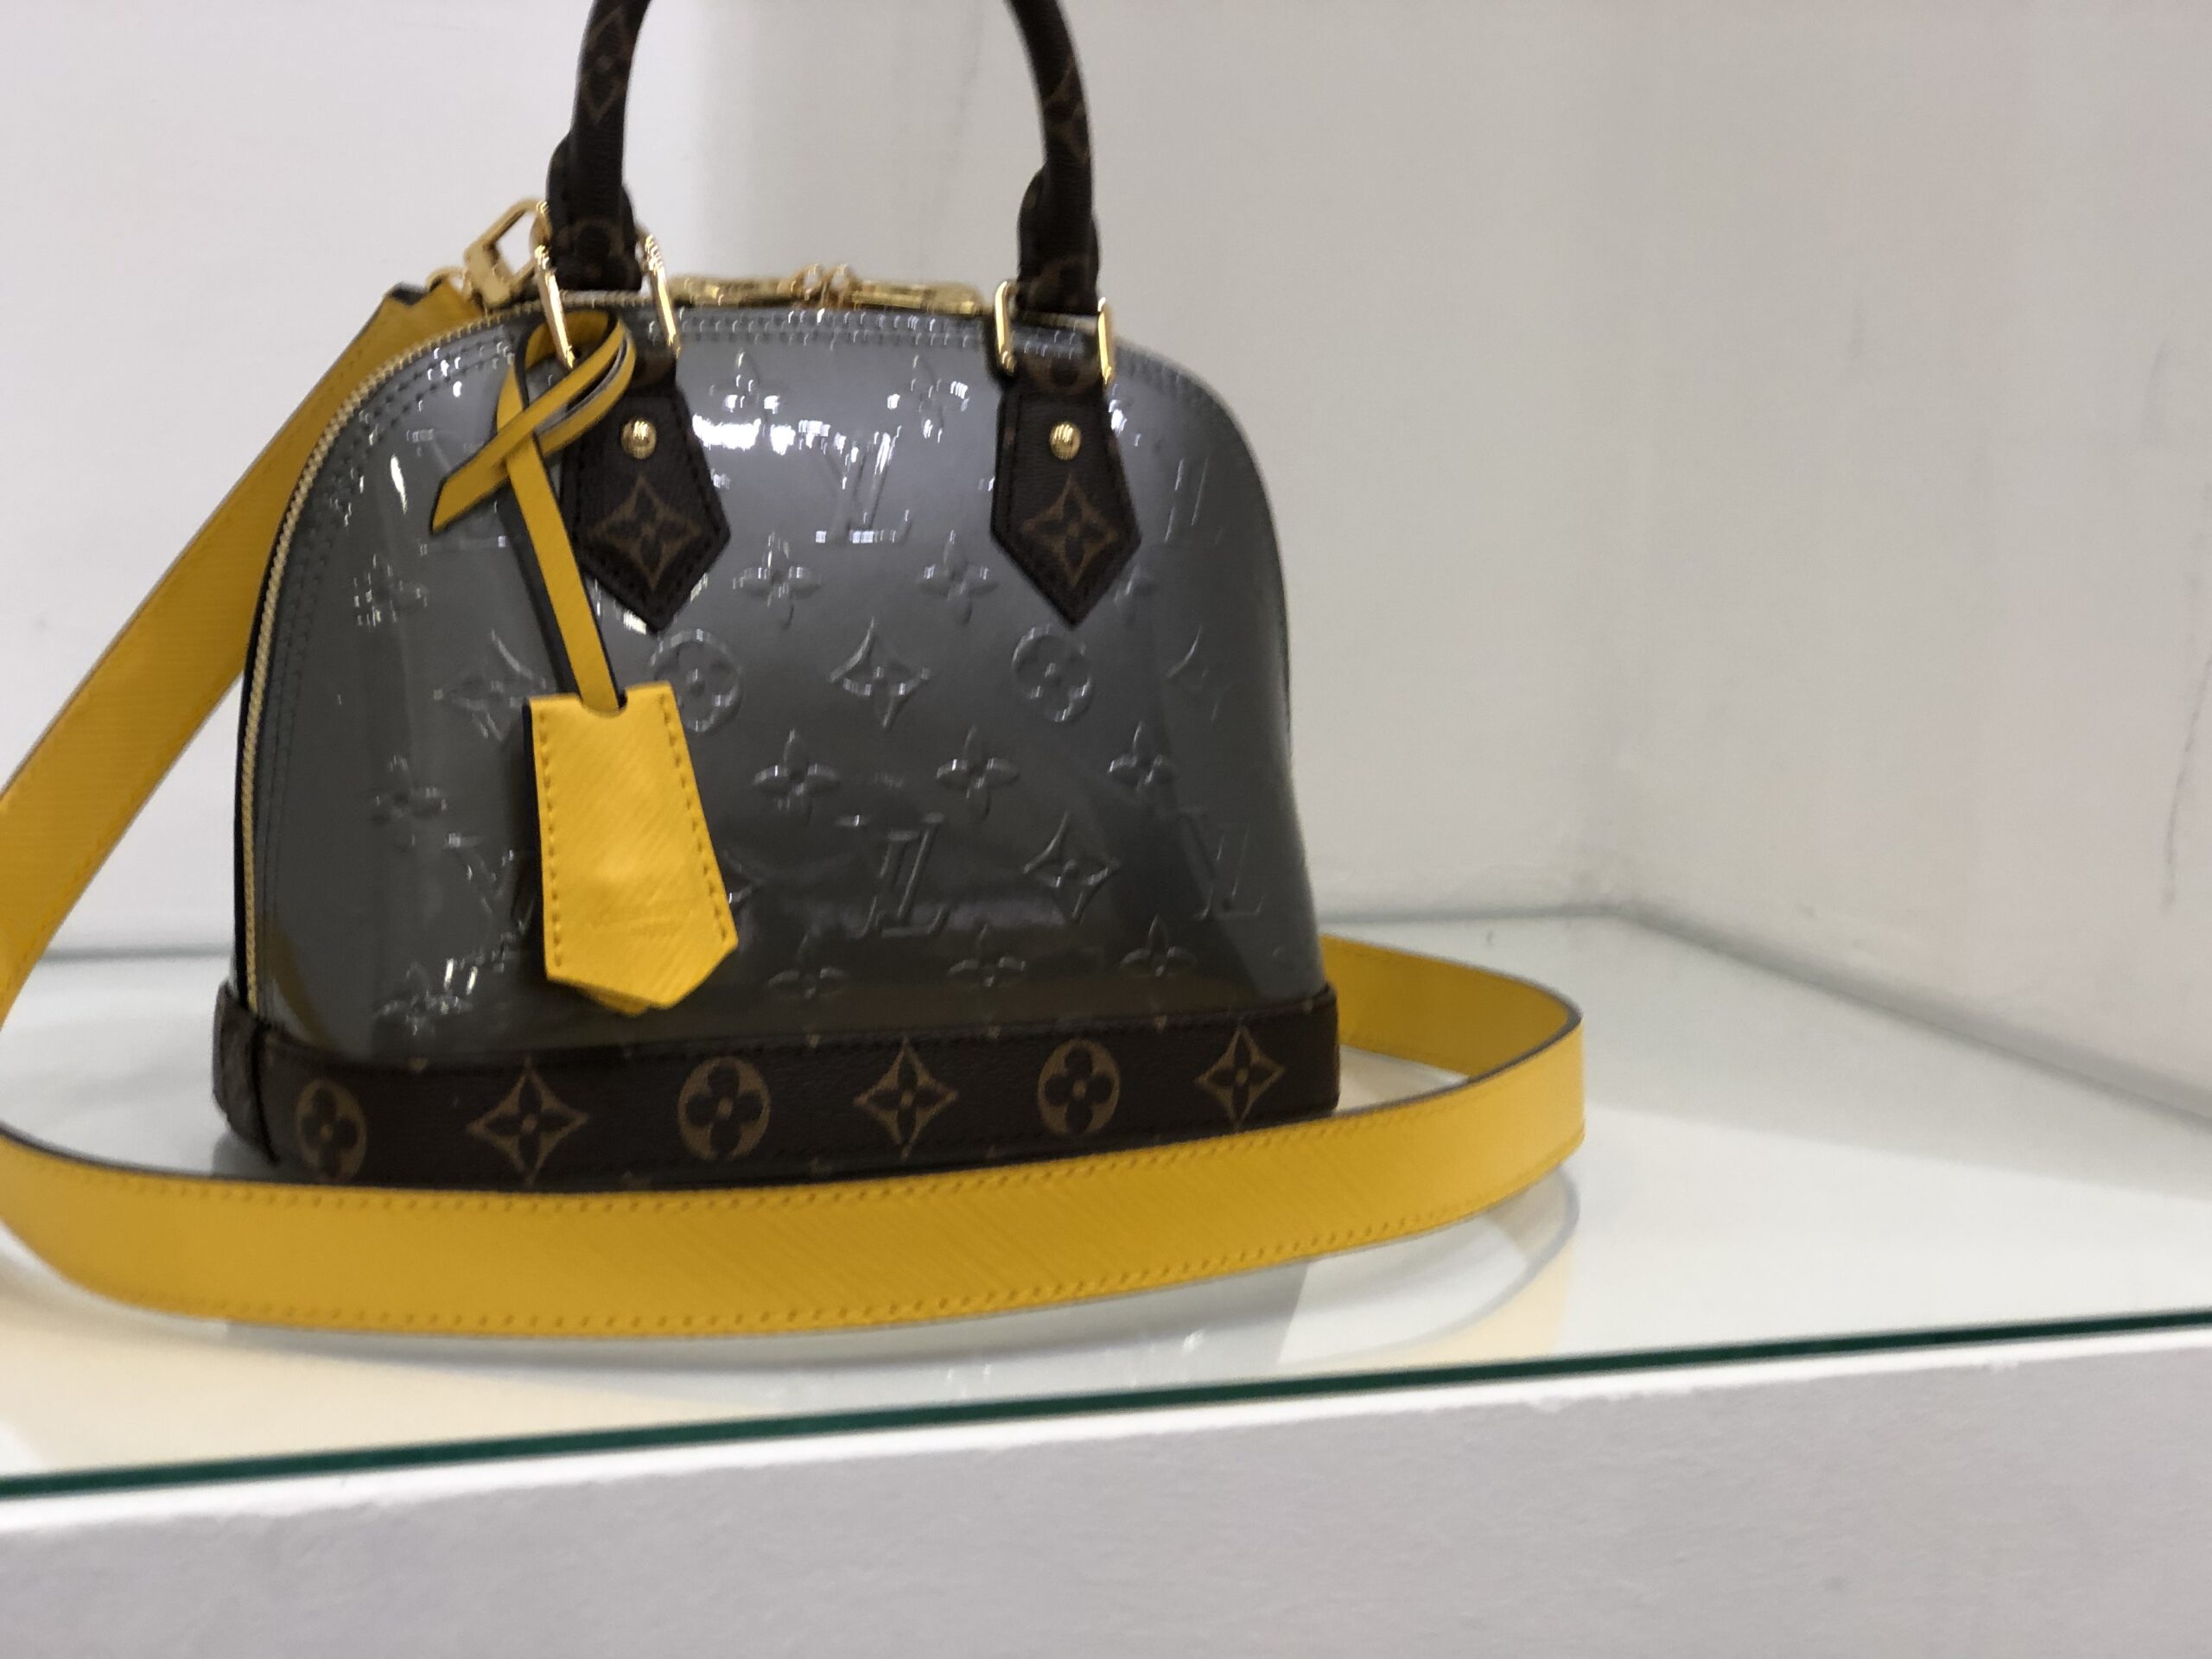 Alma BB Bag - Luxury Epi Leather Yellow